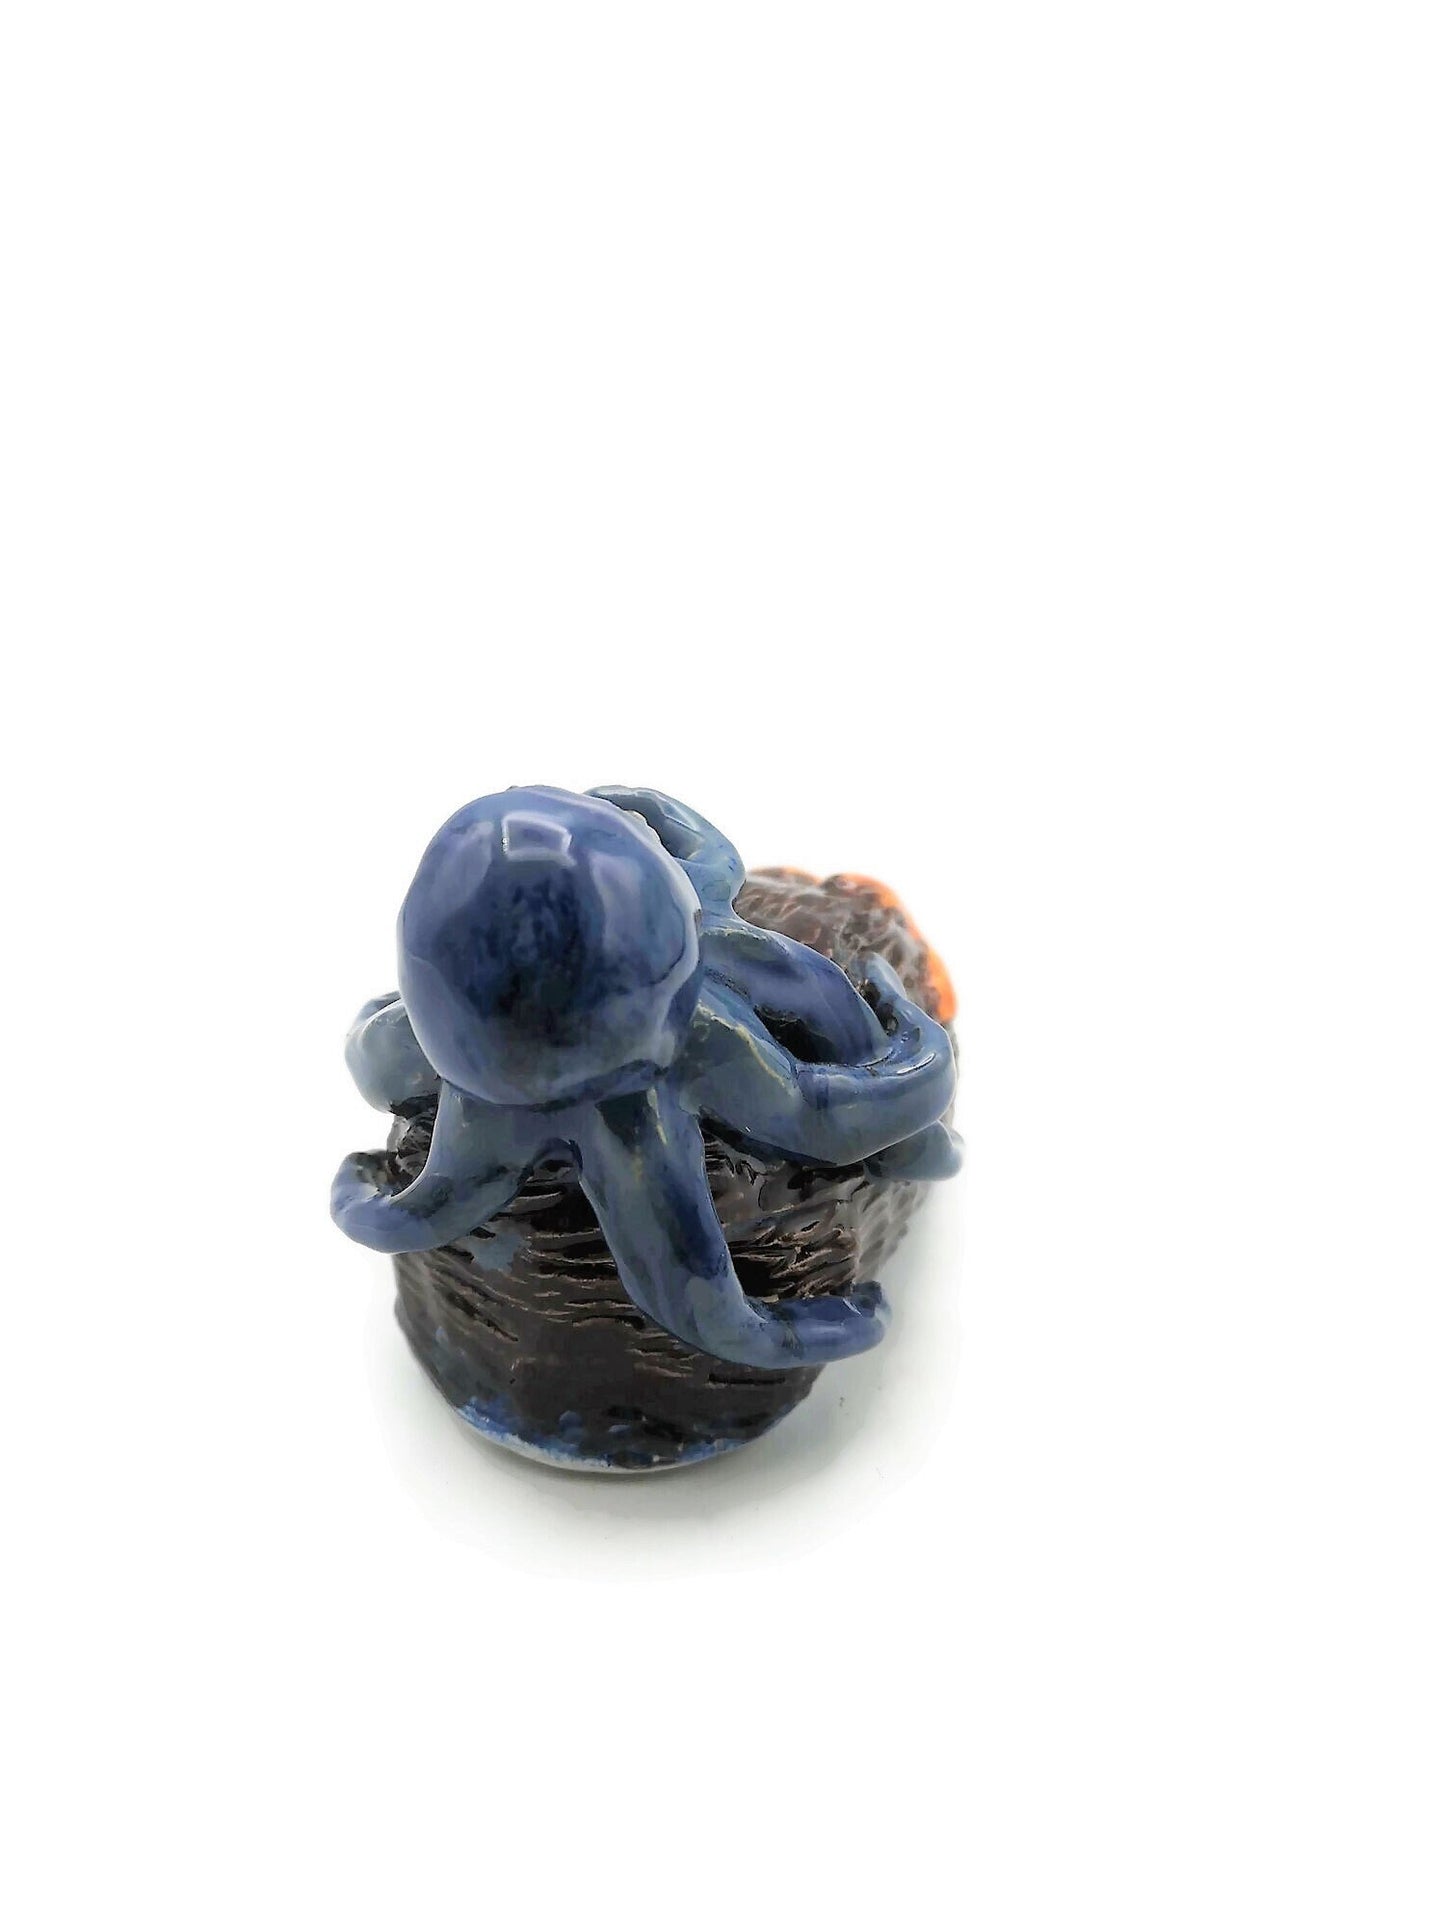 Handmade Blue Ceramic Octopus And Orange Starfish Sculpture, Modern Contemporary Coastal Home Decor For Table or Shelf - Ceramica Ana Rafael